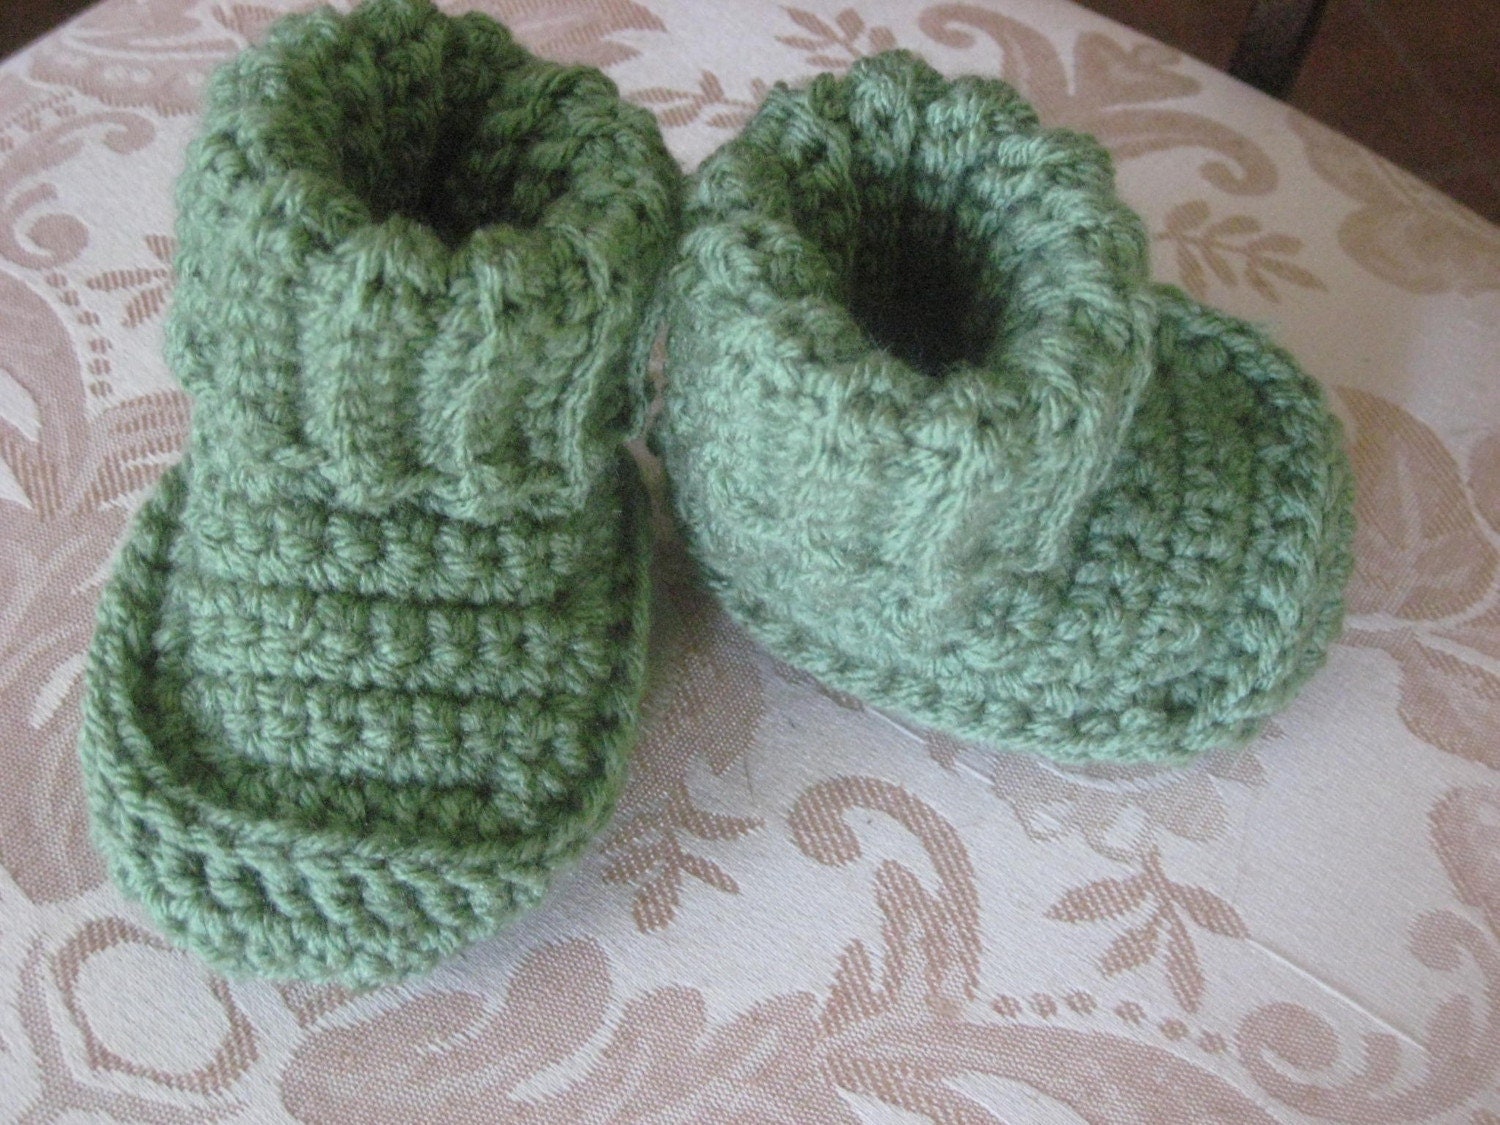 free crochet las slippers p
attern